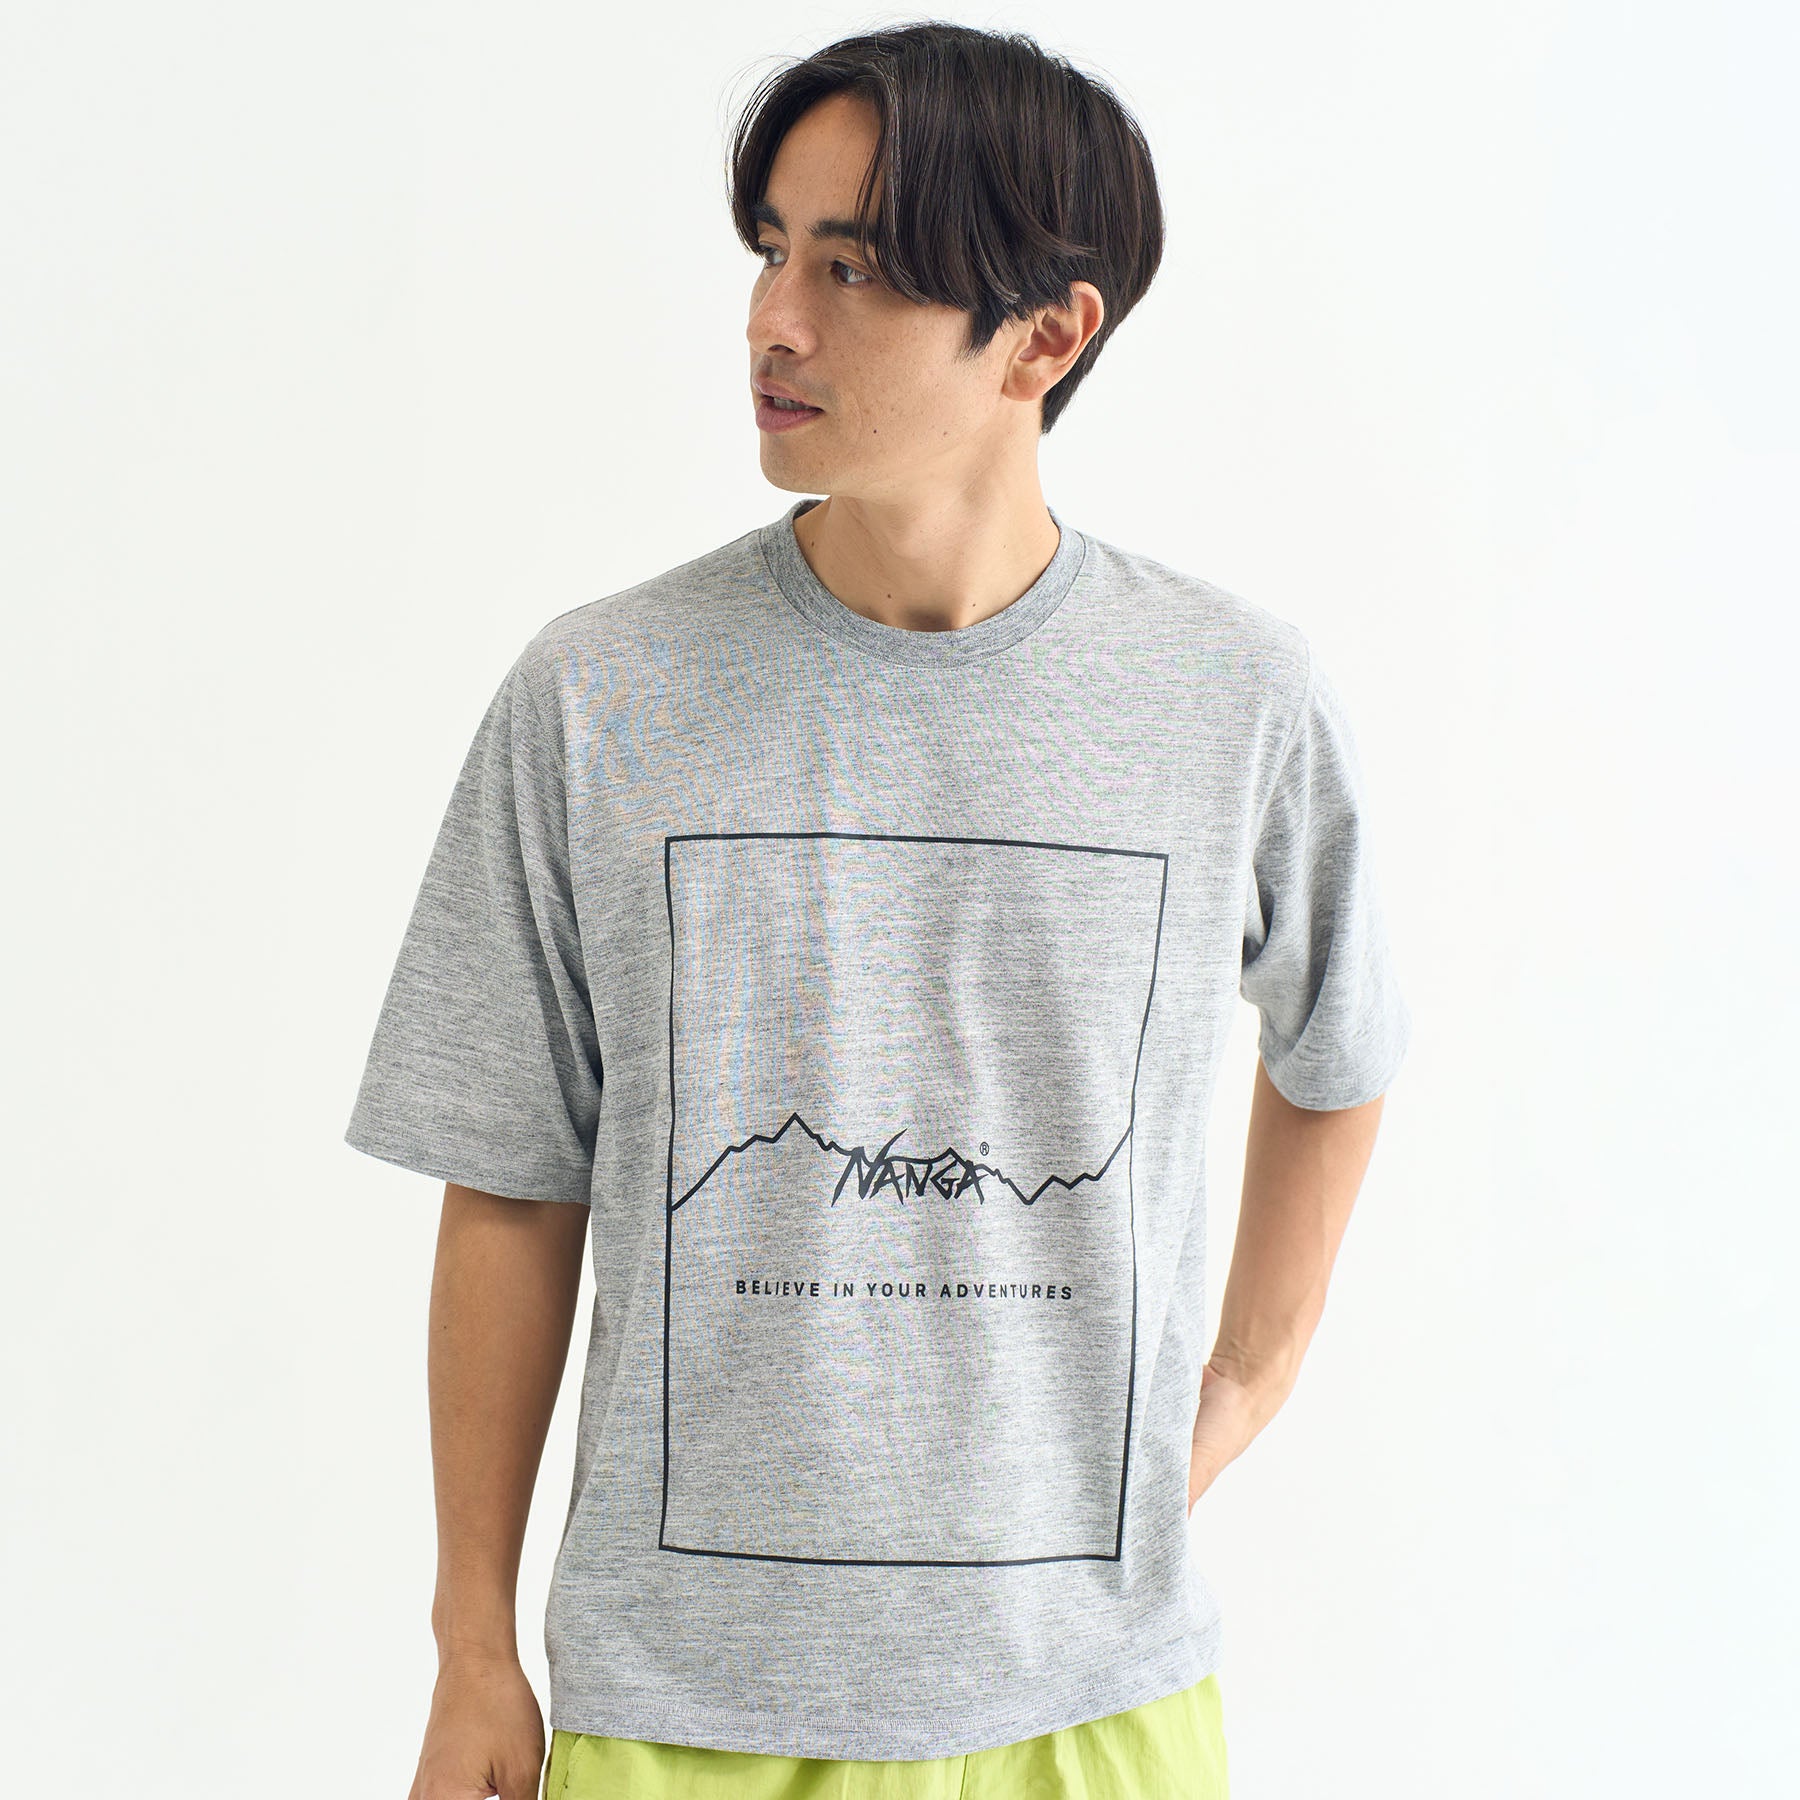 ナンガ【NANGA】ドライミックス フレームロゴティー・Tシャツ・登山・キャンプ